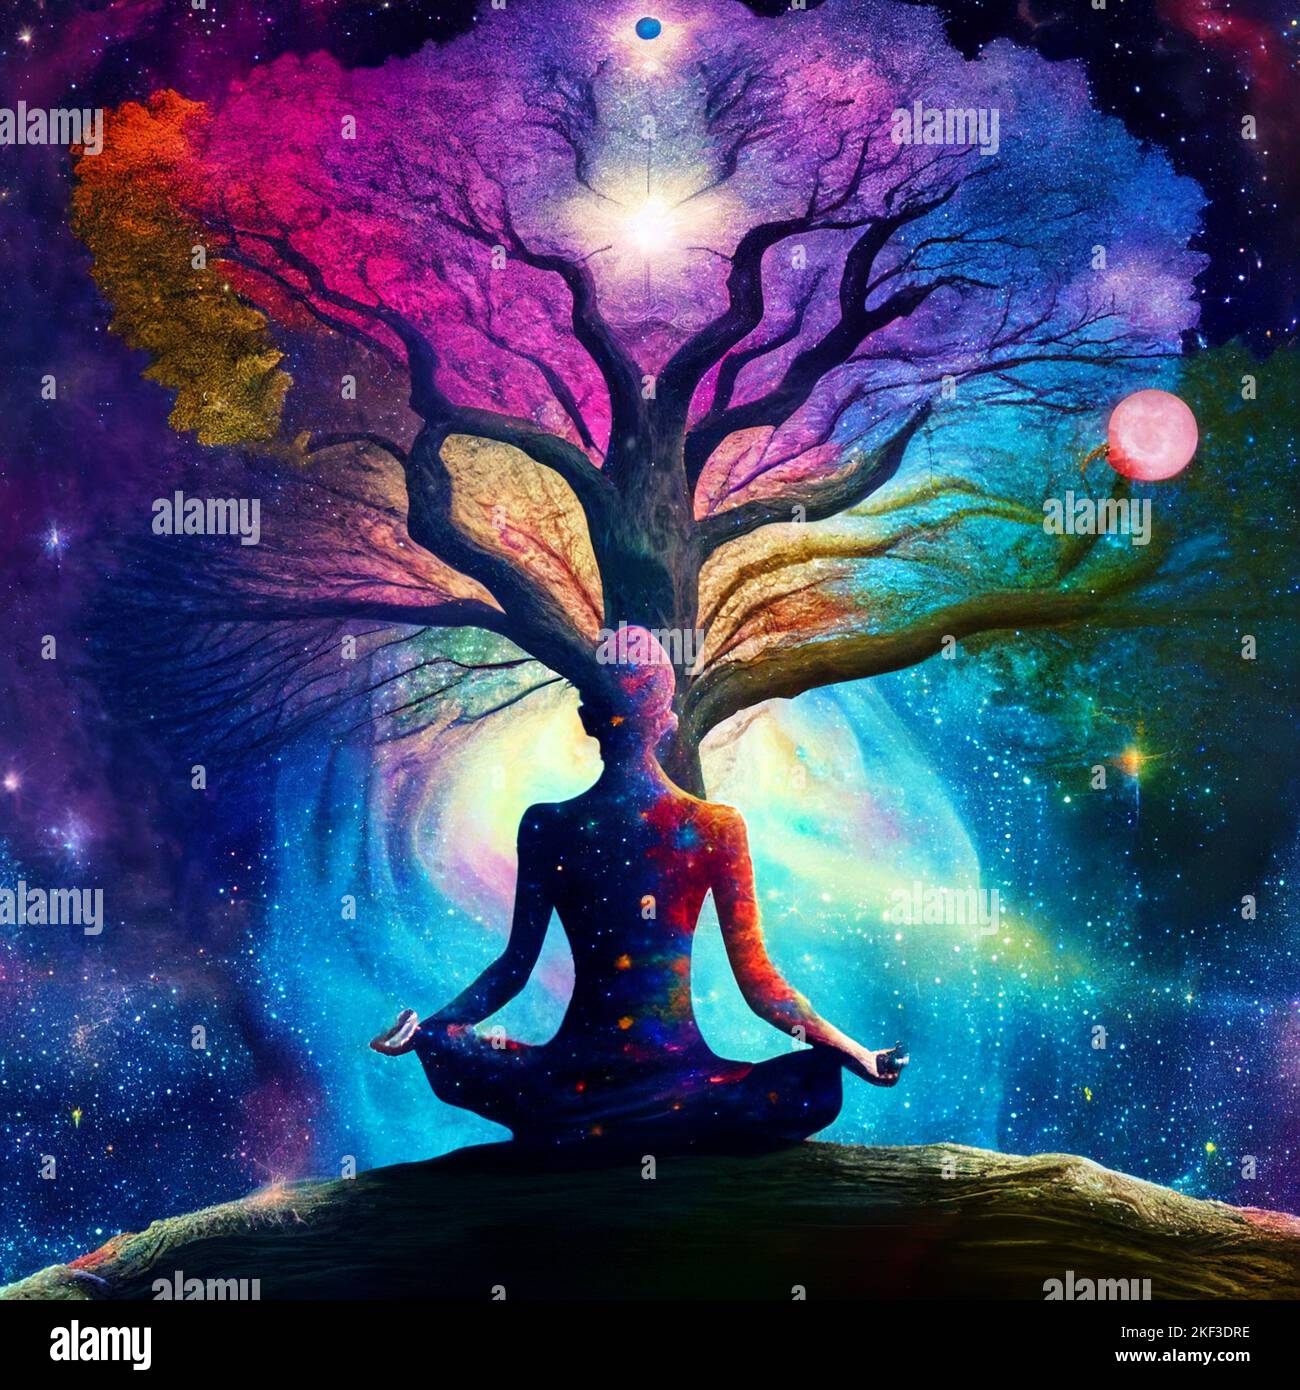 Tree Spirit Meditation, Ökologie Reflexion, Mensch und Baum verflochten, Hintergrund von Galaxien und Nebel, mystische Konzentration, Hingabe und Frieden Stockfoto